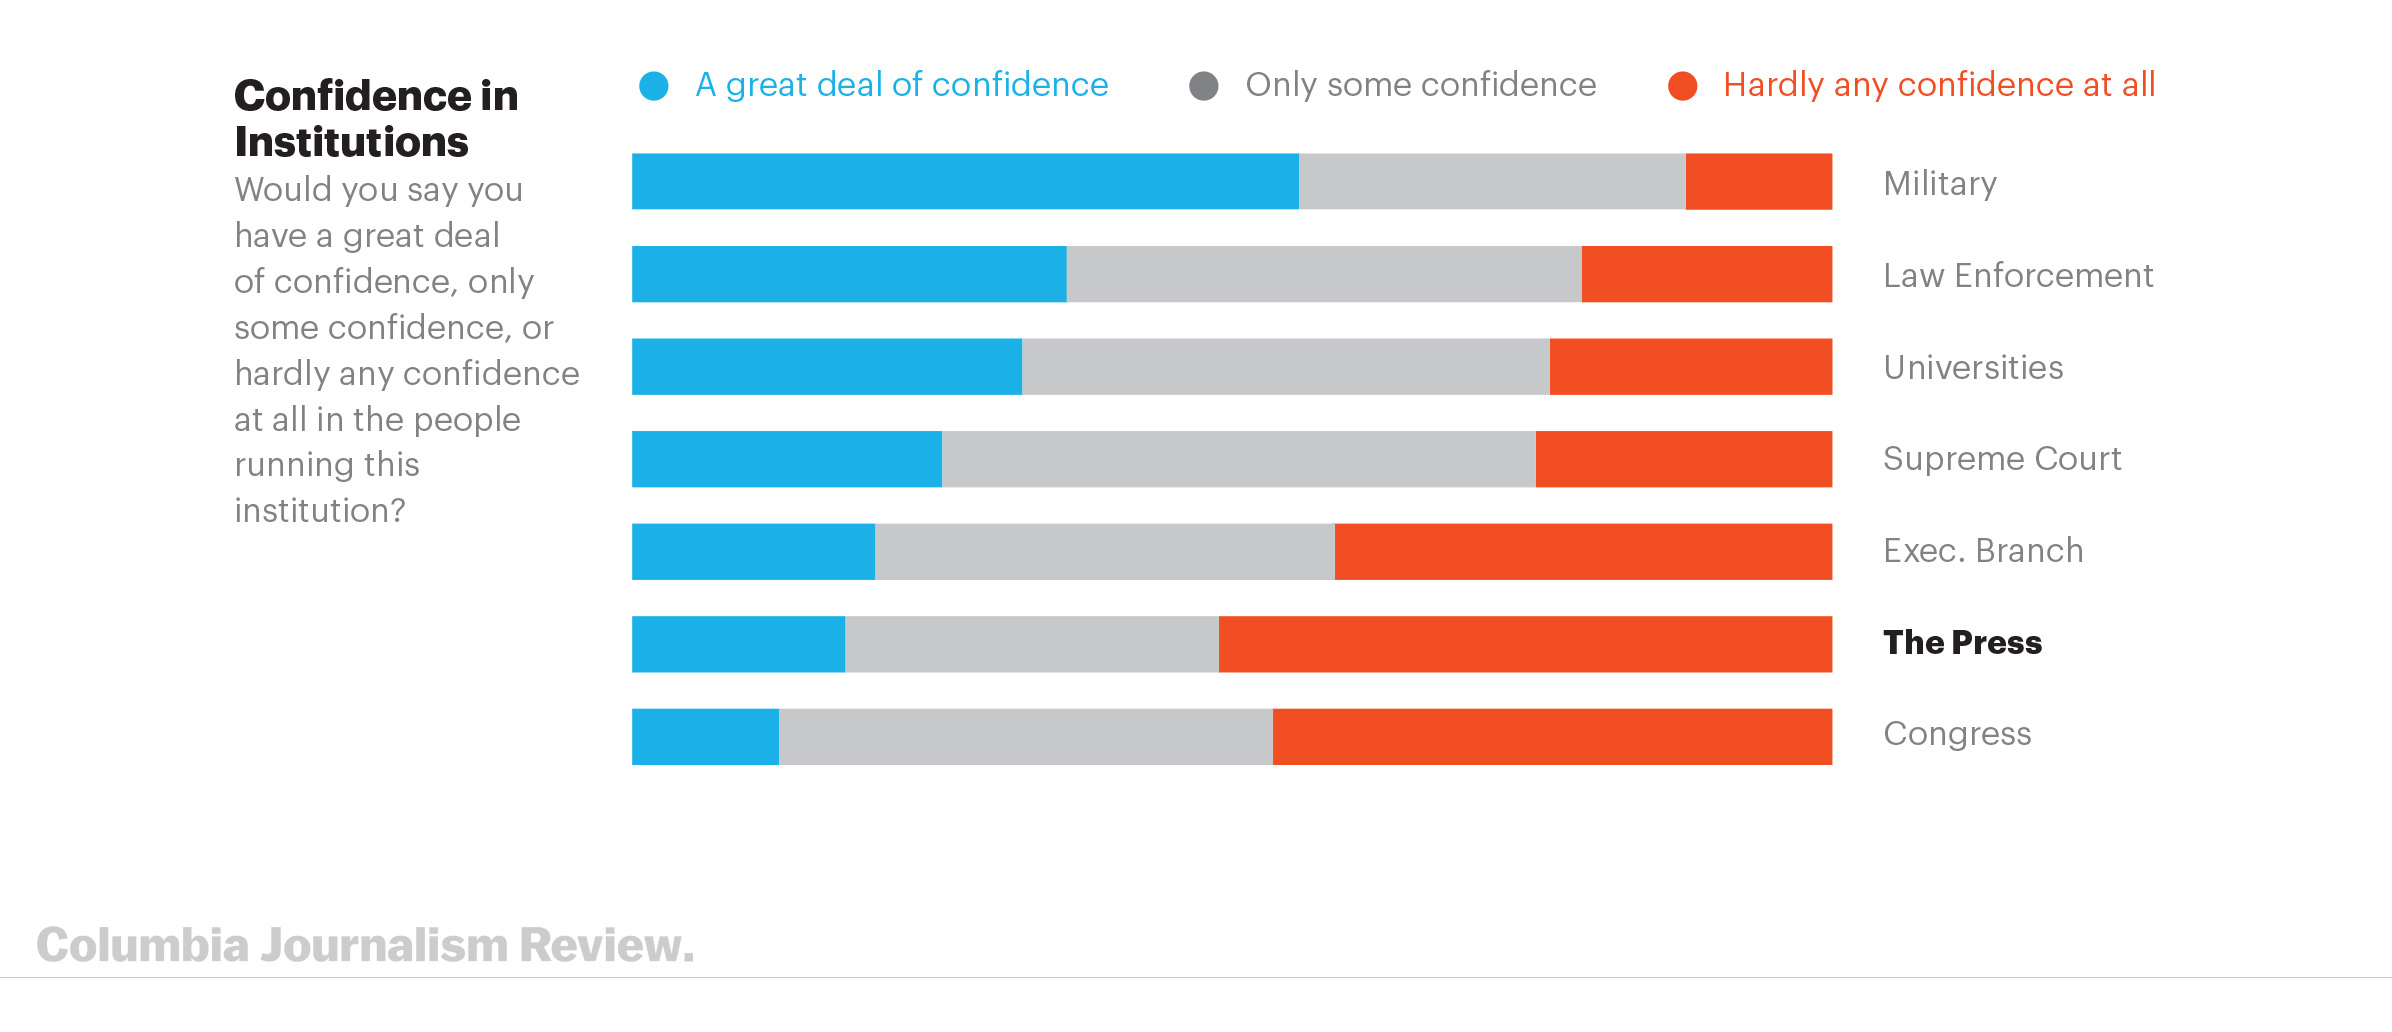 Confidence in Media